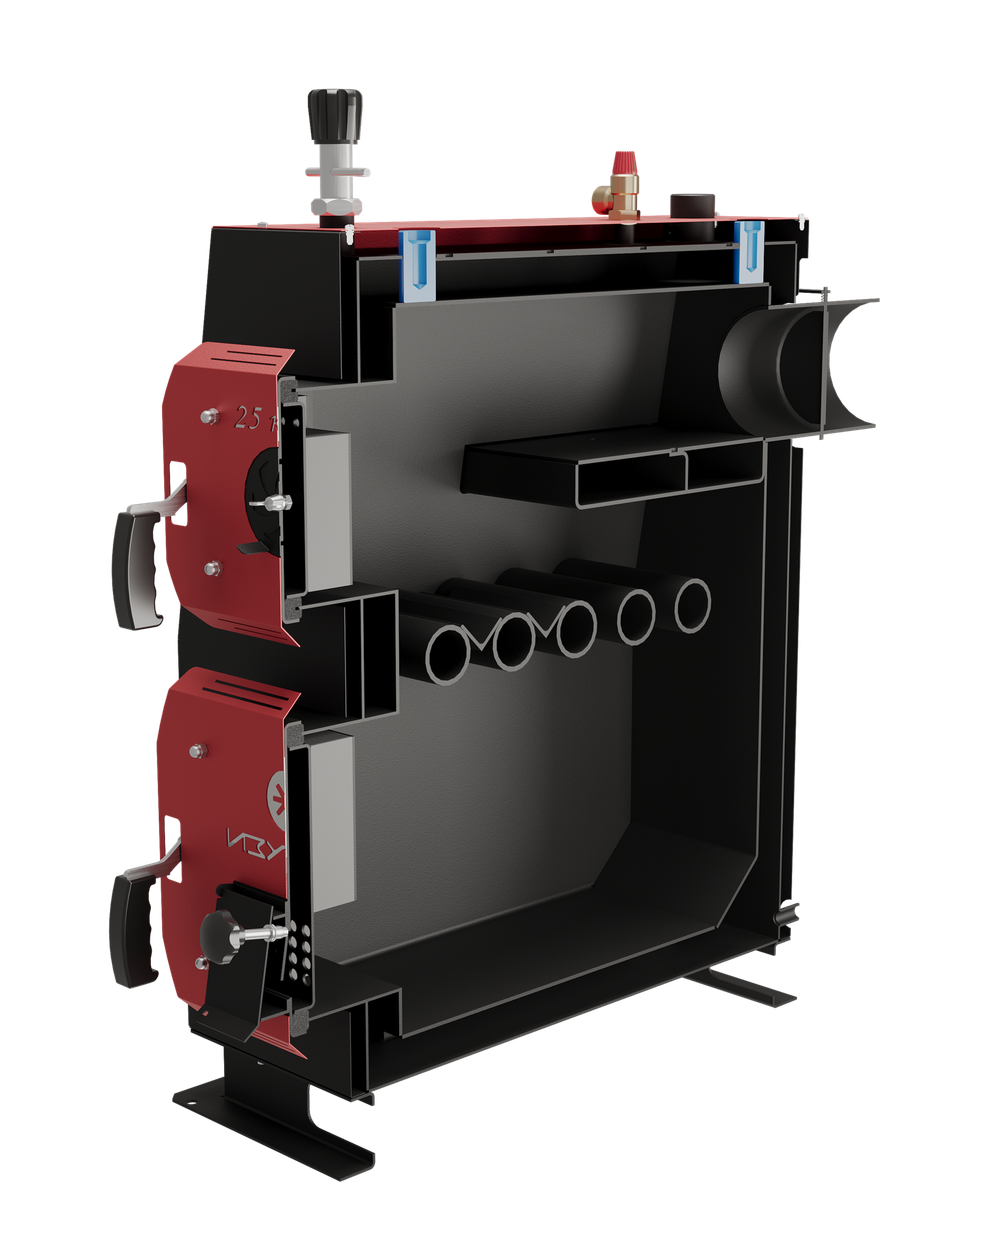 Твердотопливный котел длительного горения Изуран-80 в кожухе на 80 кВт. Отапливаемое помещение до 2160 куб.м. В разрезе. Производитель - Изуран